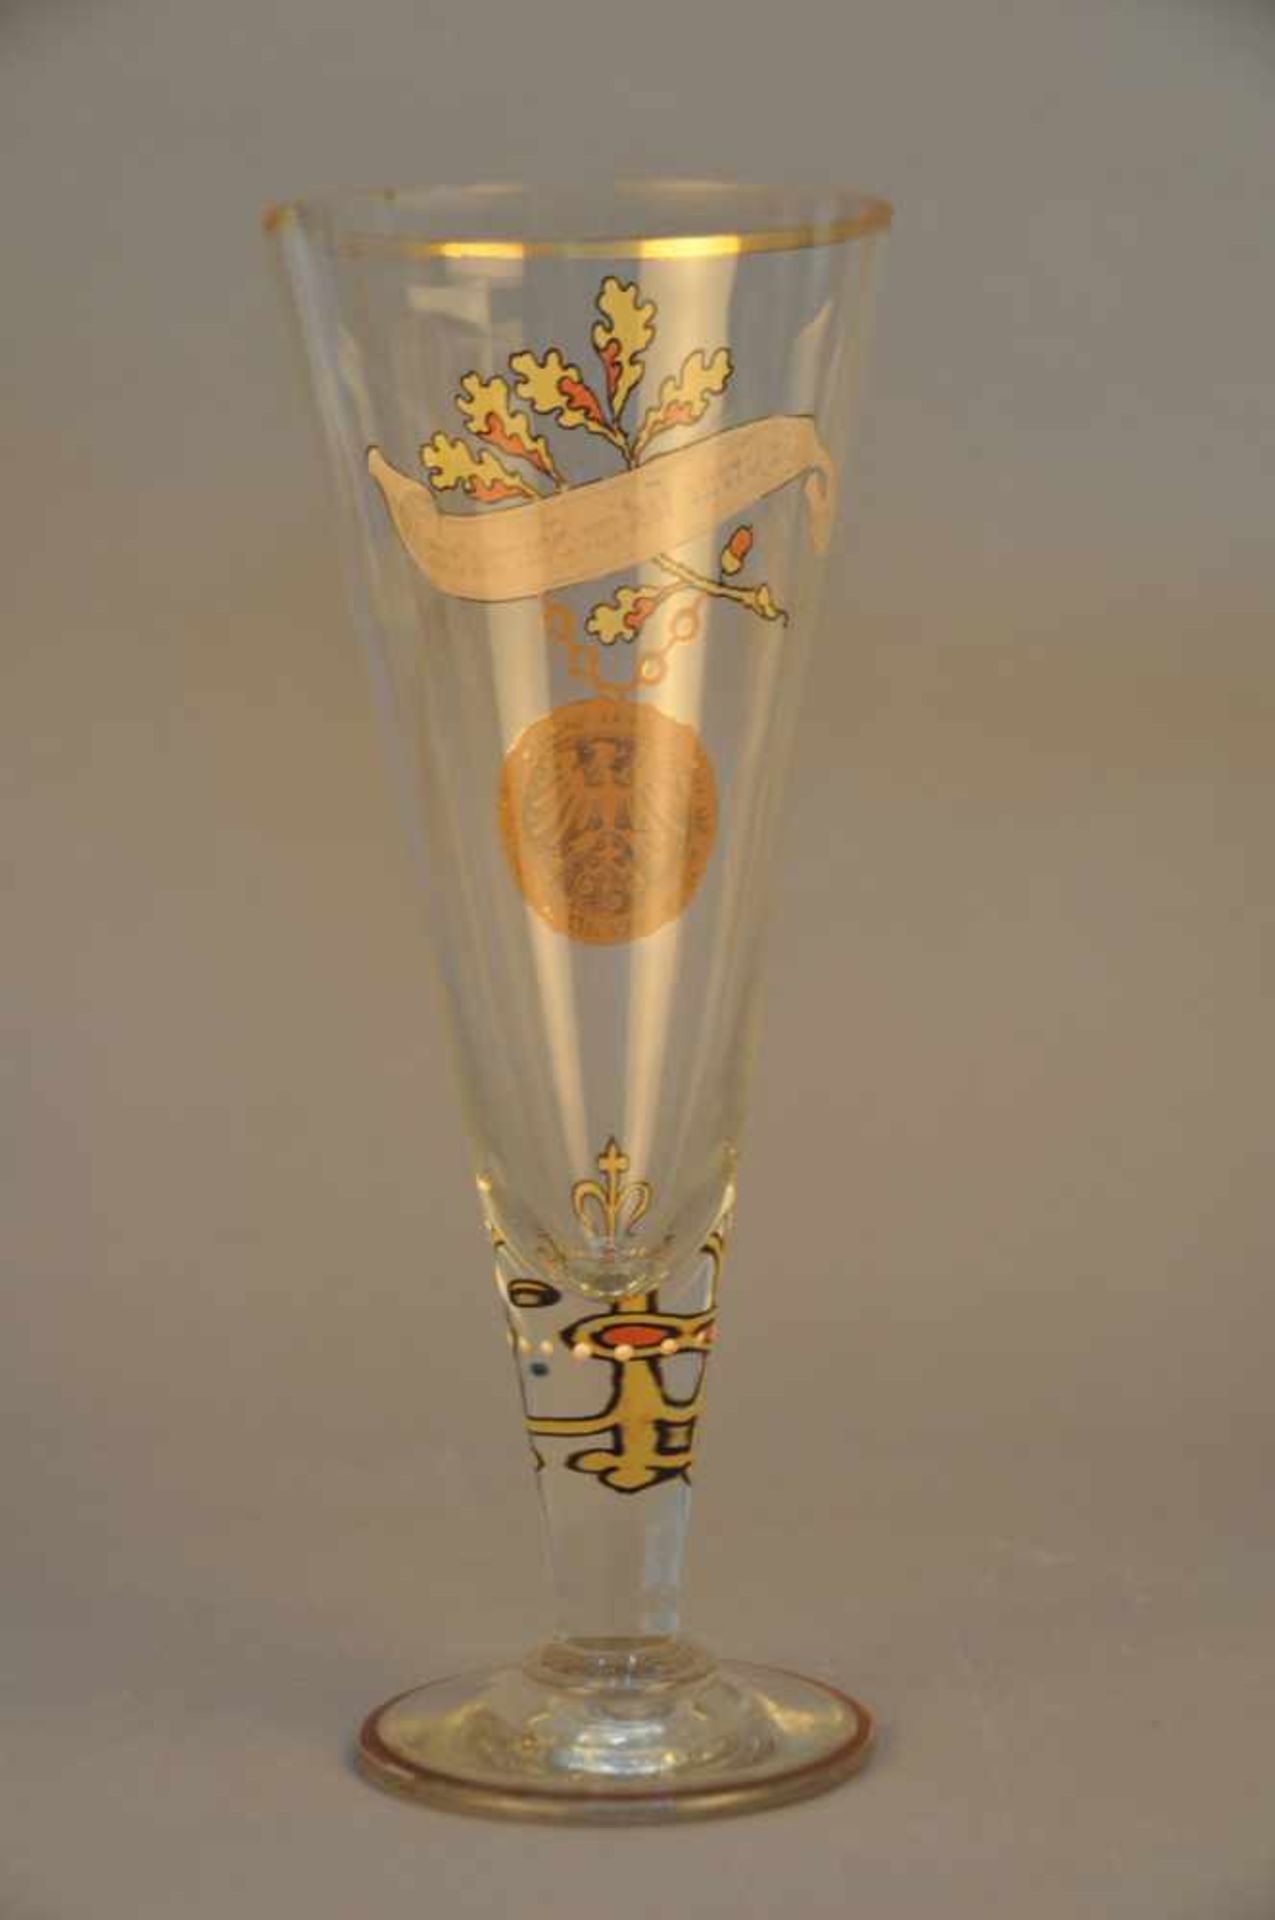 Kelchglas mit Emaillemalerei. Amulett, Eichenlaub und stilisiertes Kreuz, deutscher Sinnspruch / - Bild 3 aus 3